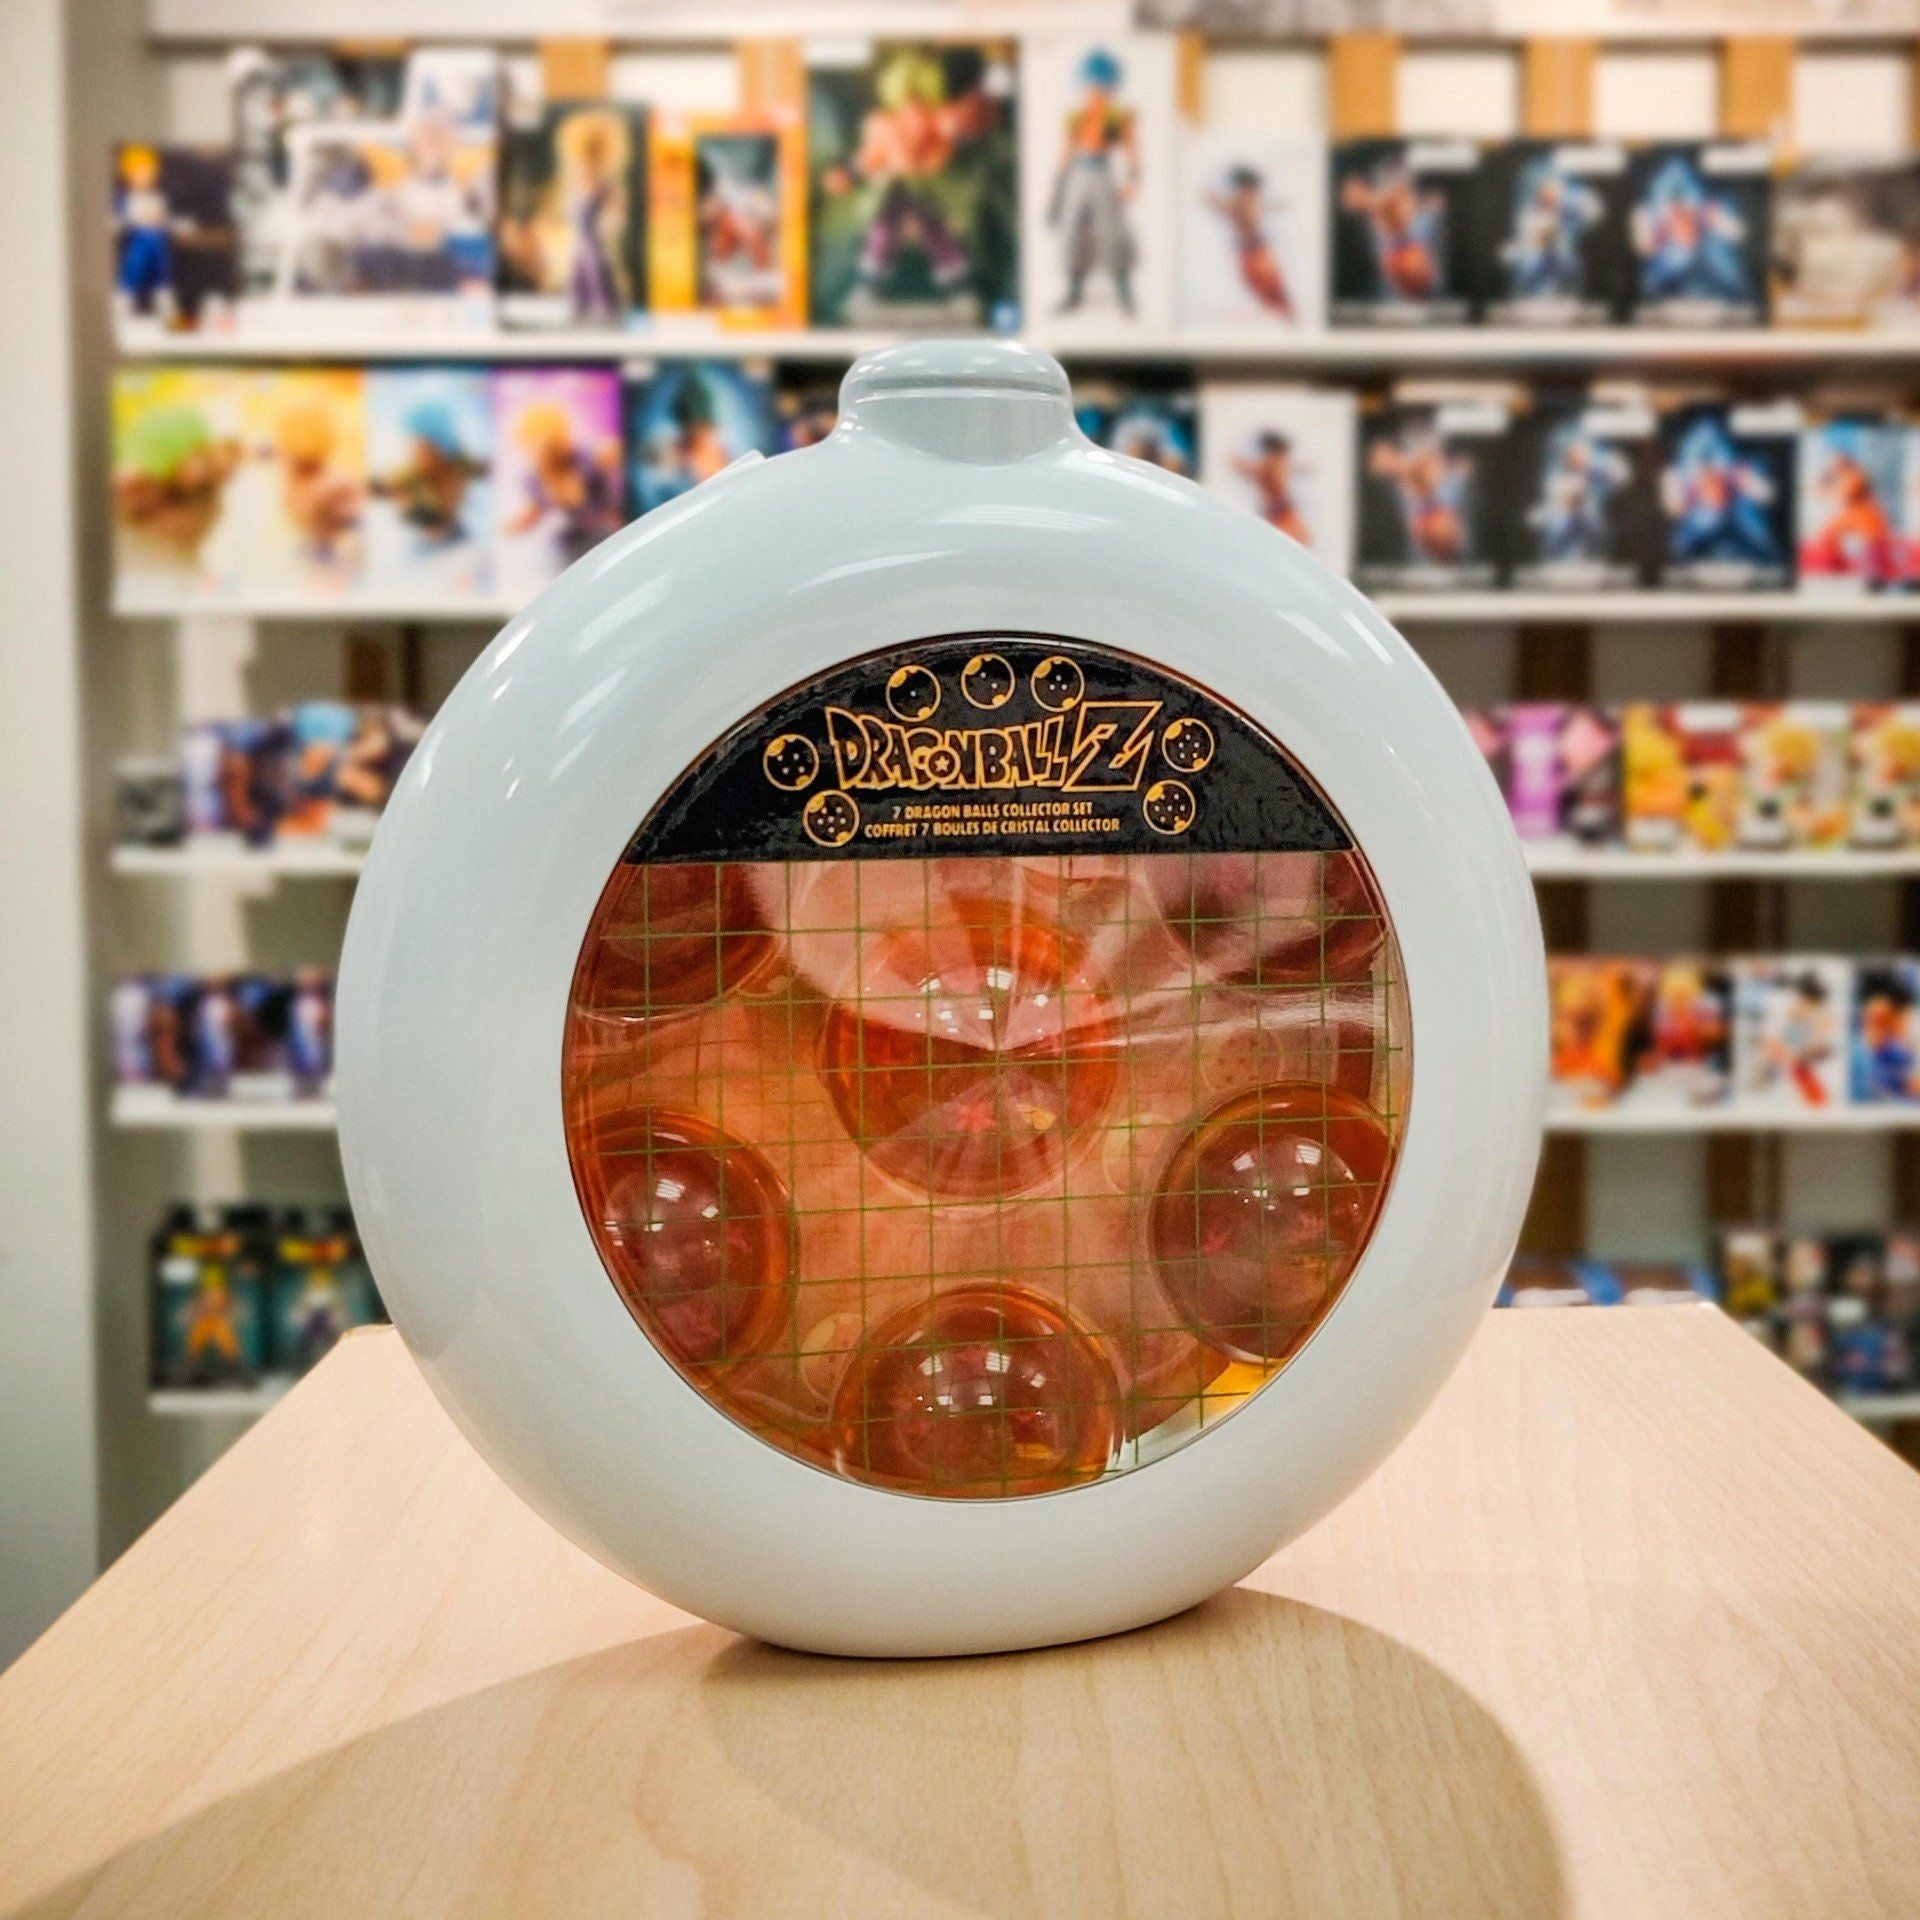 DRAGON BALL Z Coffret boules de cristal & radar Bandai